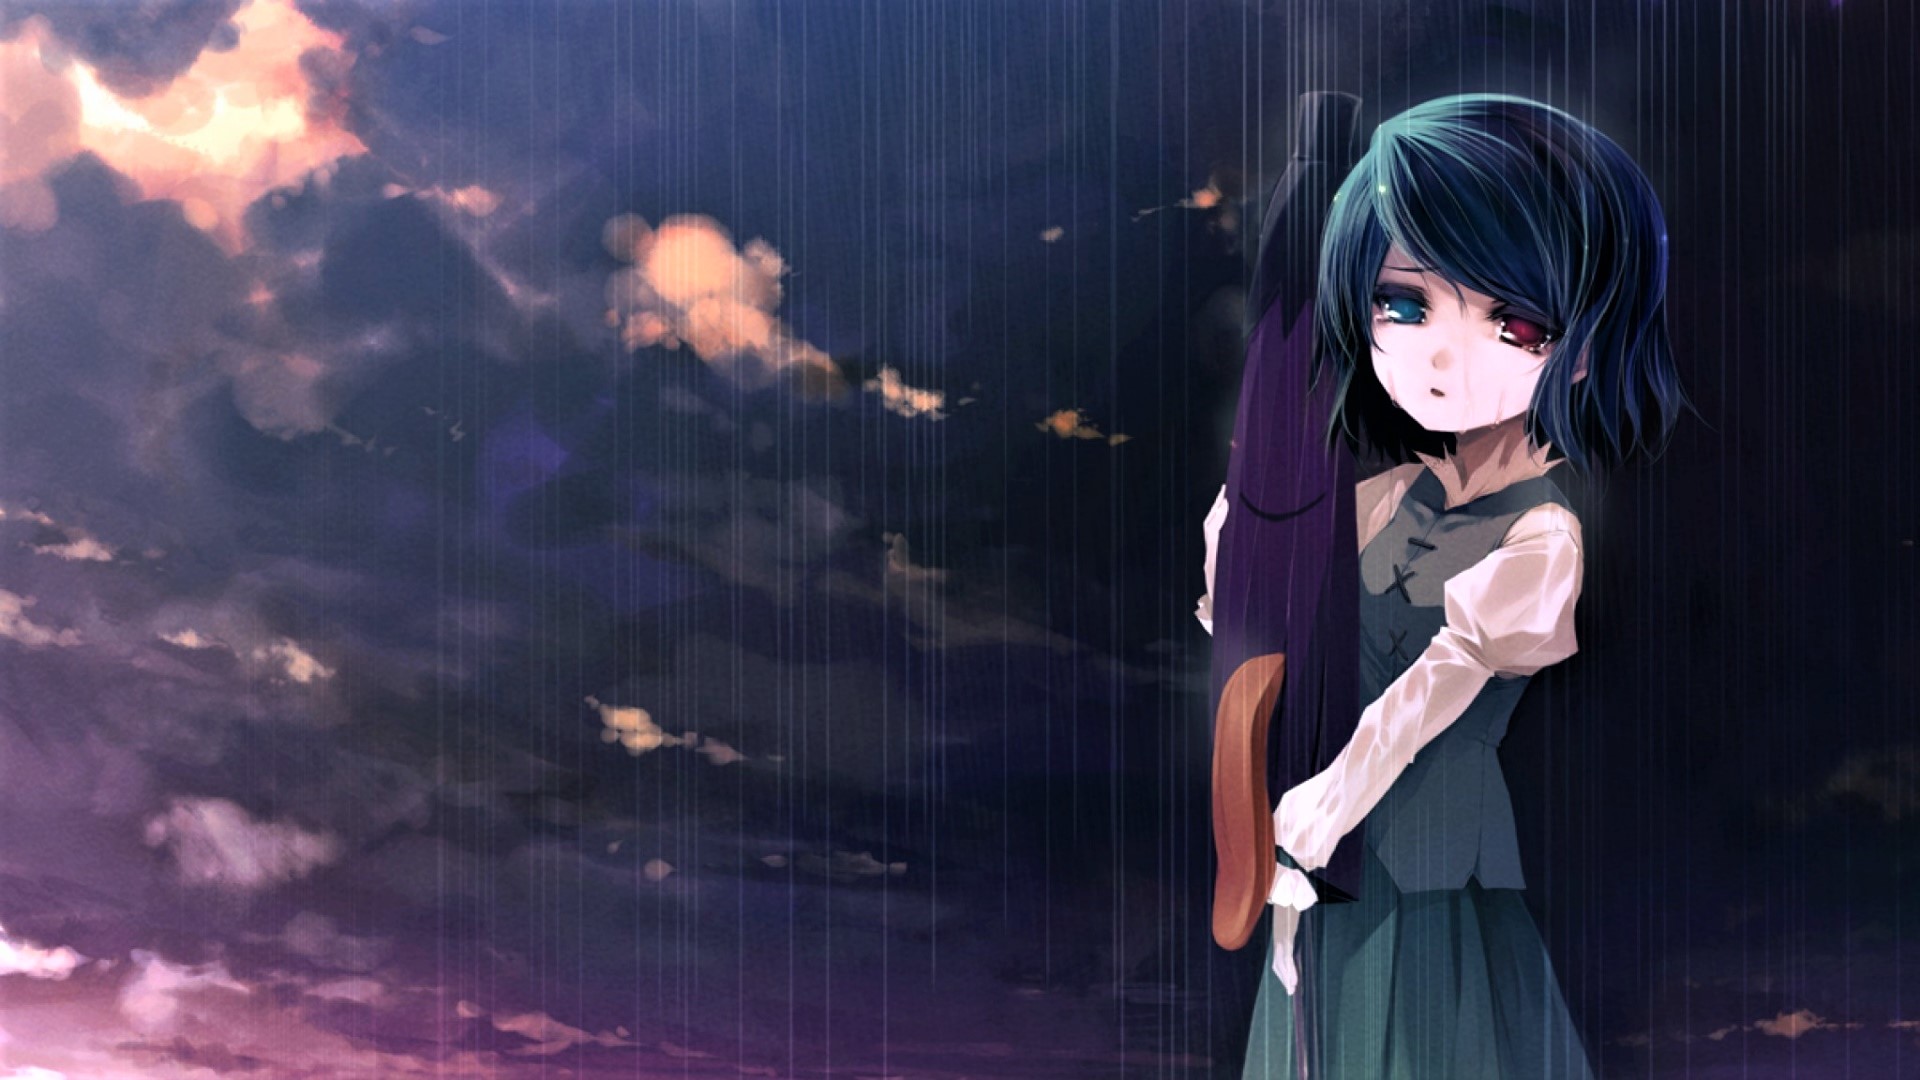 Sad Anime Wallpaper Boy And Girl